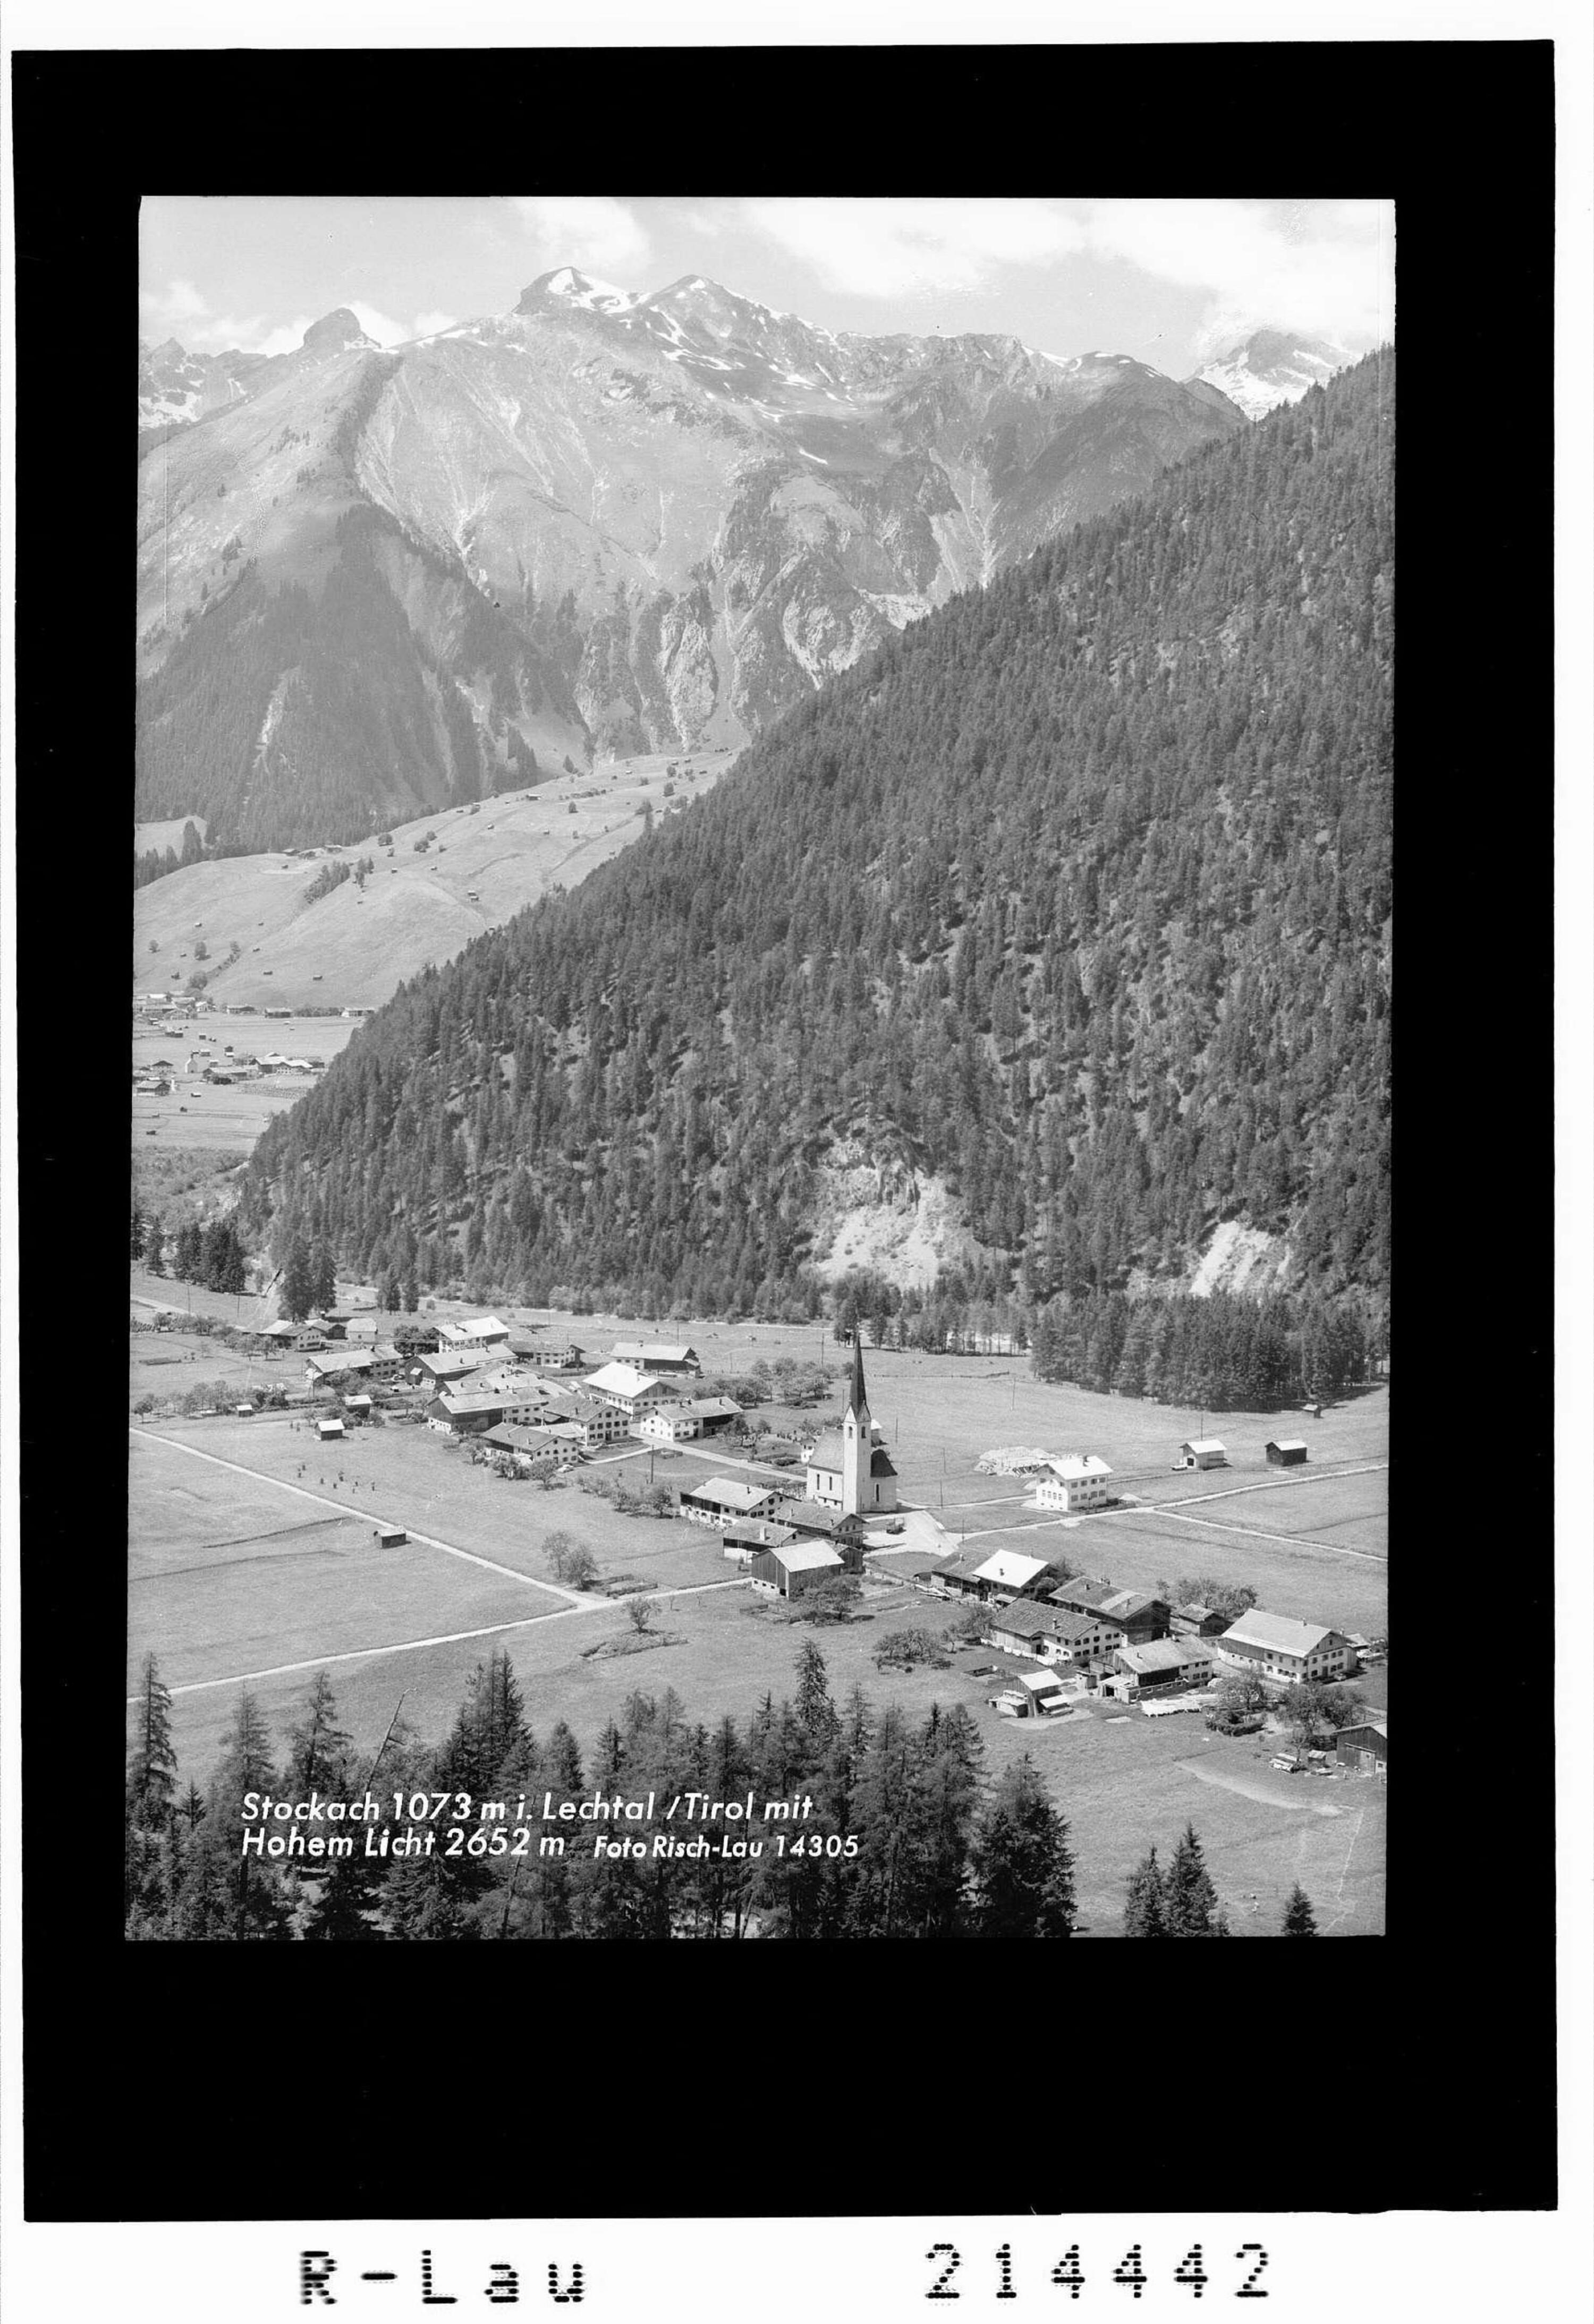 Stockach 1073 m im Lechtal / Tirol mit Hohem Licht 2652 m></div>


    <hr>
    <div class=